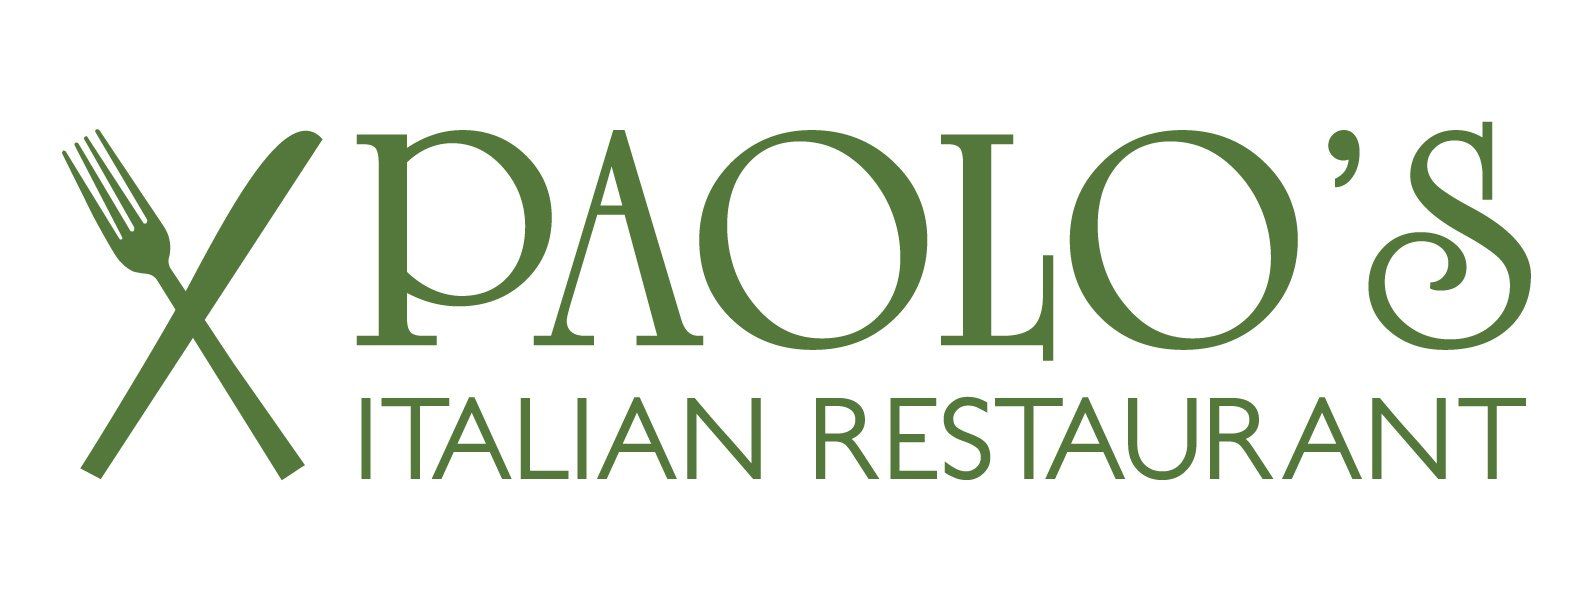 Paolo's Italian Restaurant - Logo